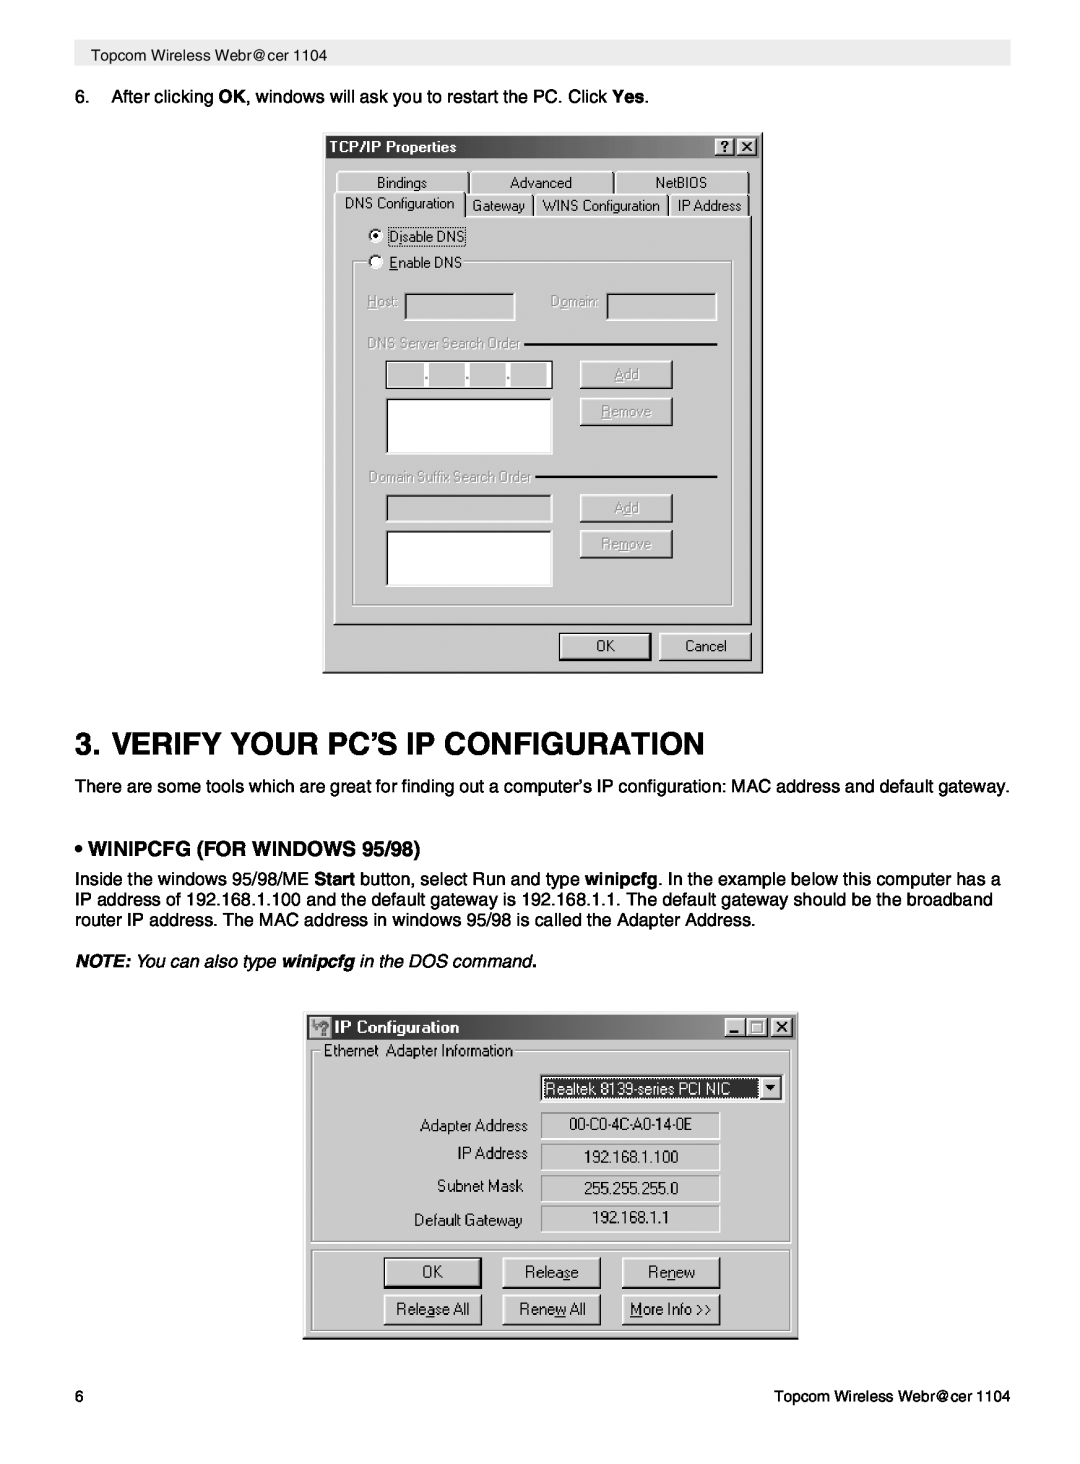 Topcom 1104 manual do utilizador Verify Your Pc’S Ip Configuration, WINIPCFG FOR WINDOWS 95/98 